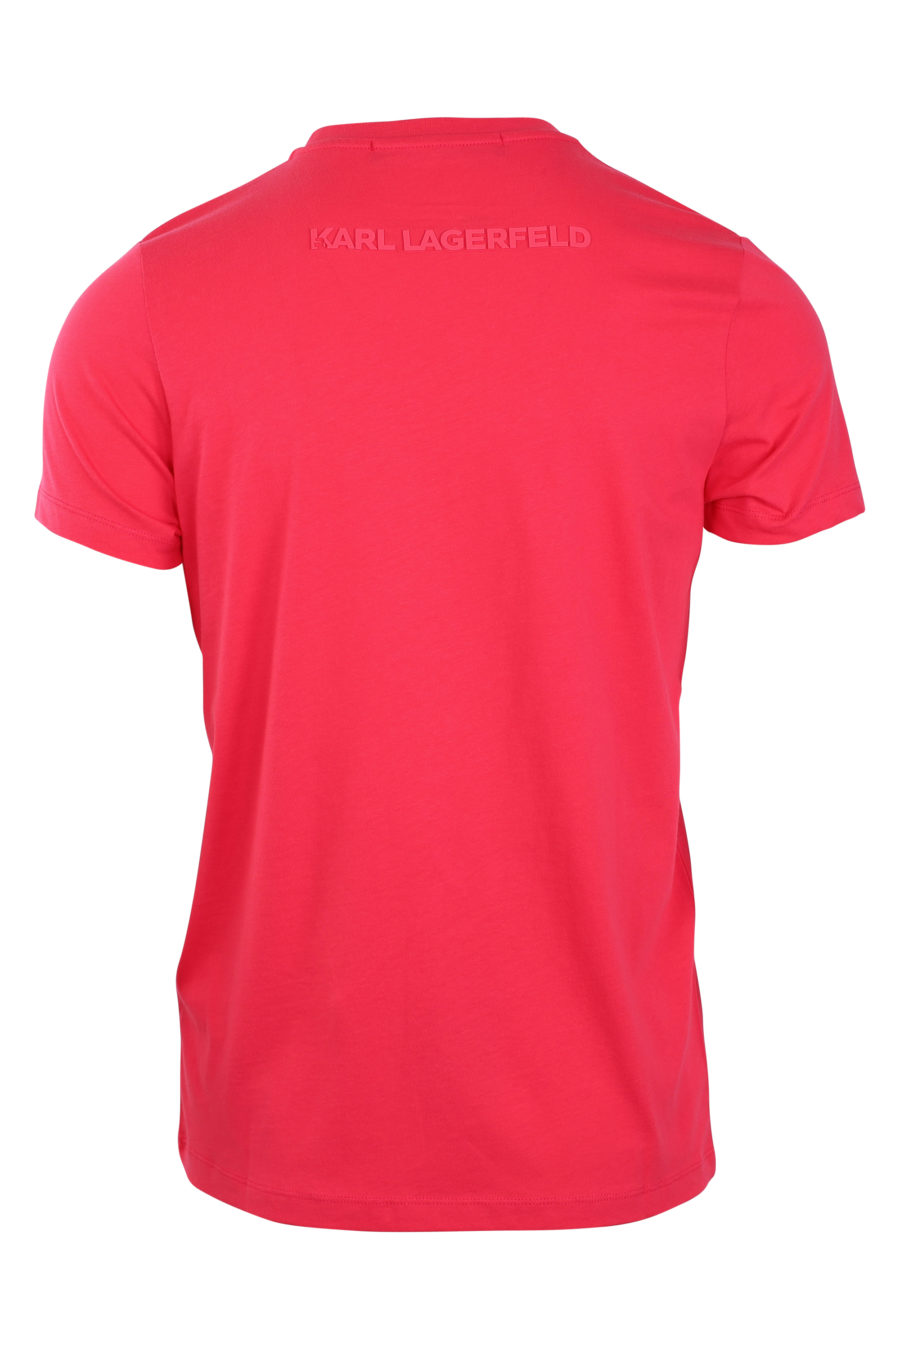 T-shirt fúcsia com logótipo em silhueta monocromática - IMG 0841